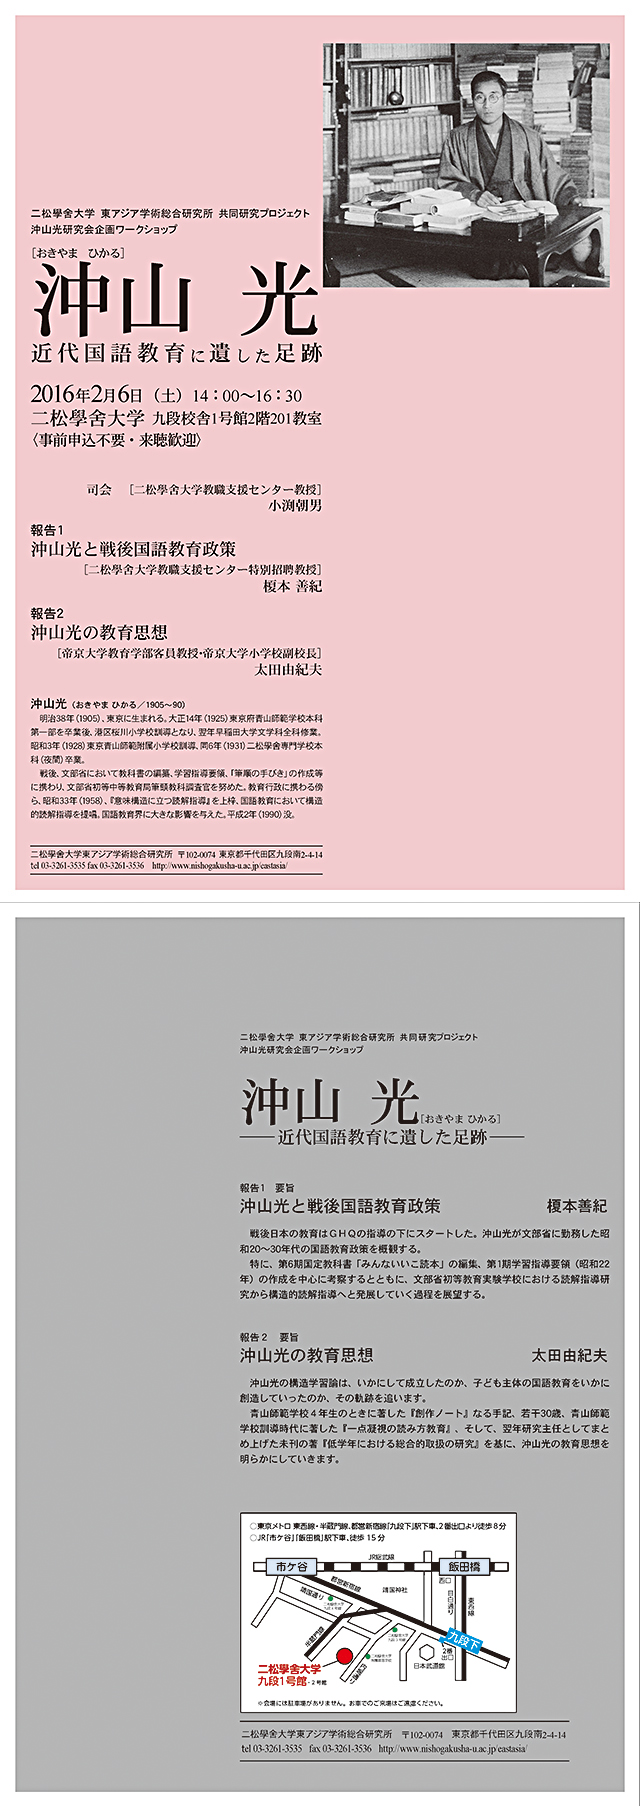 東アジア学術総合研究所 ワークショップのポスター表面